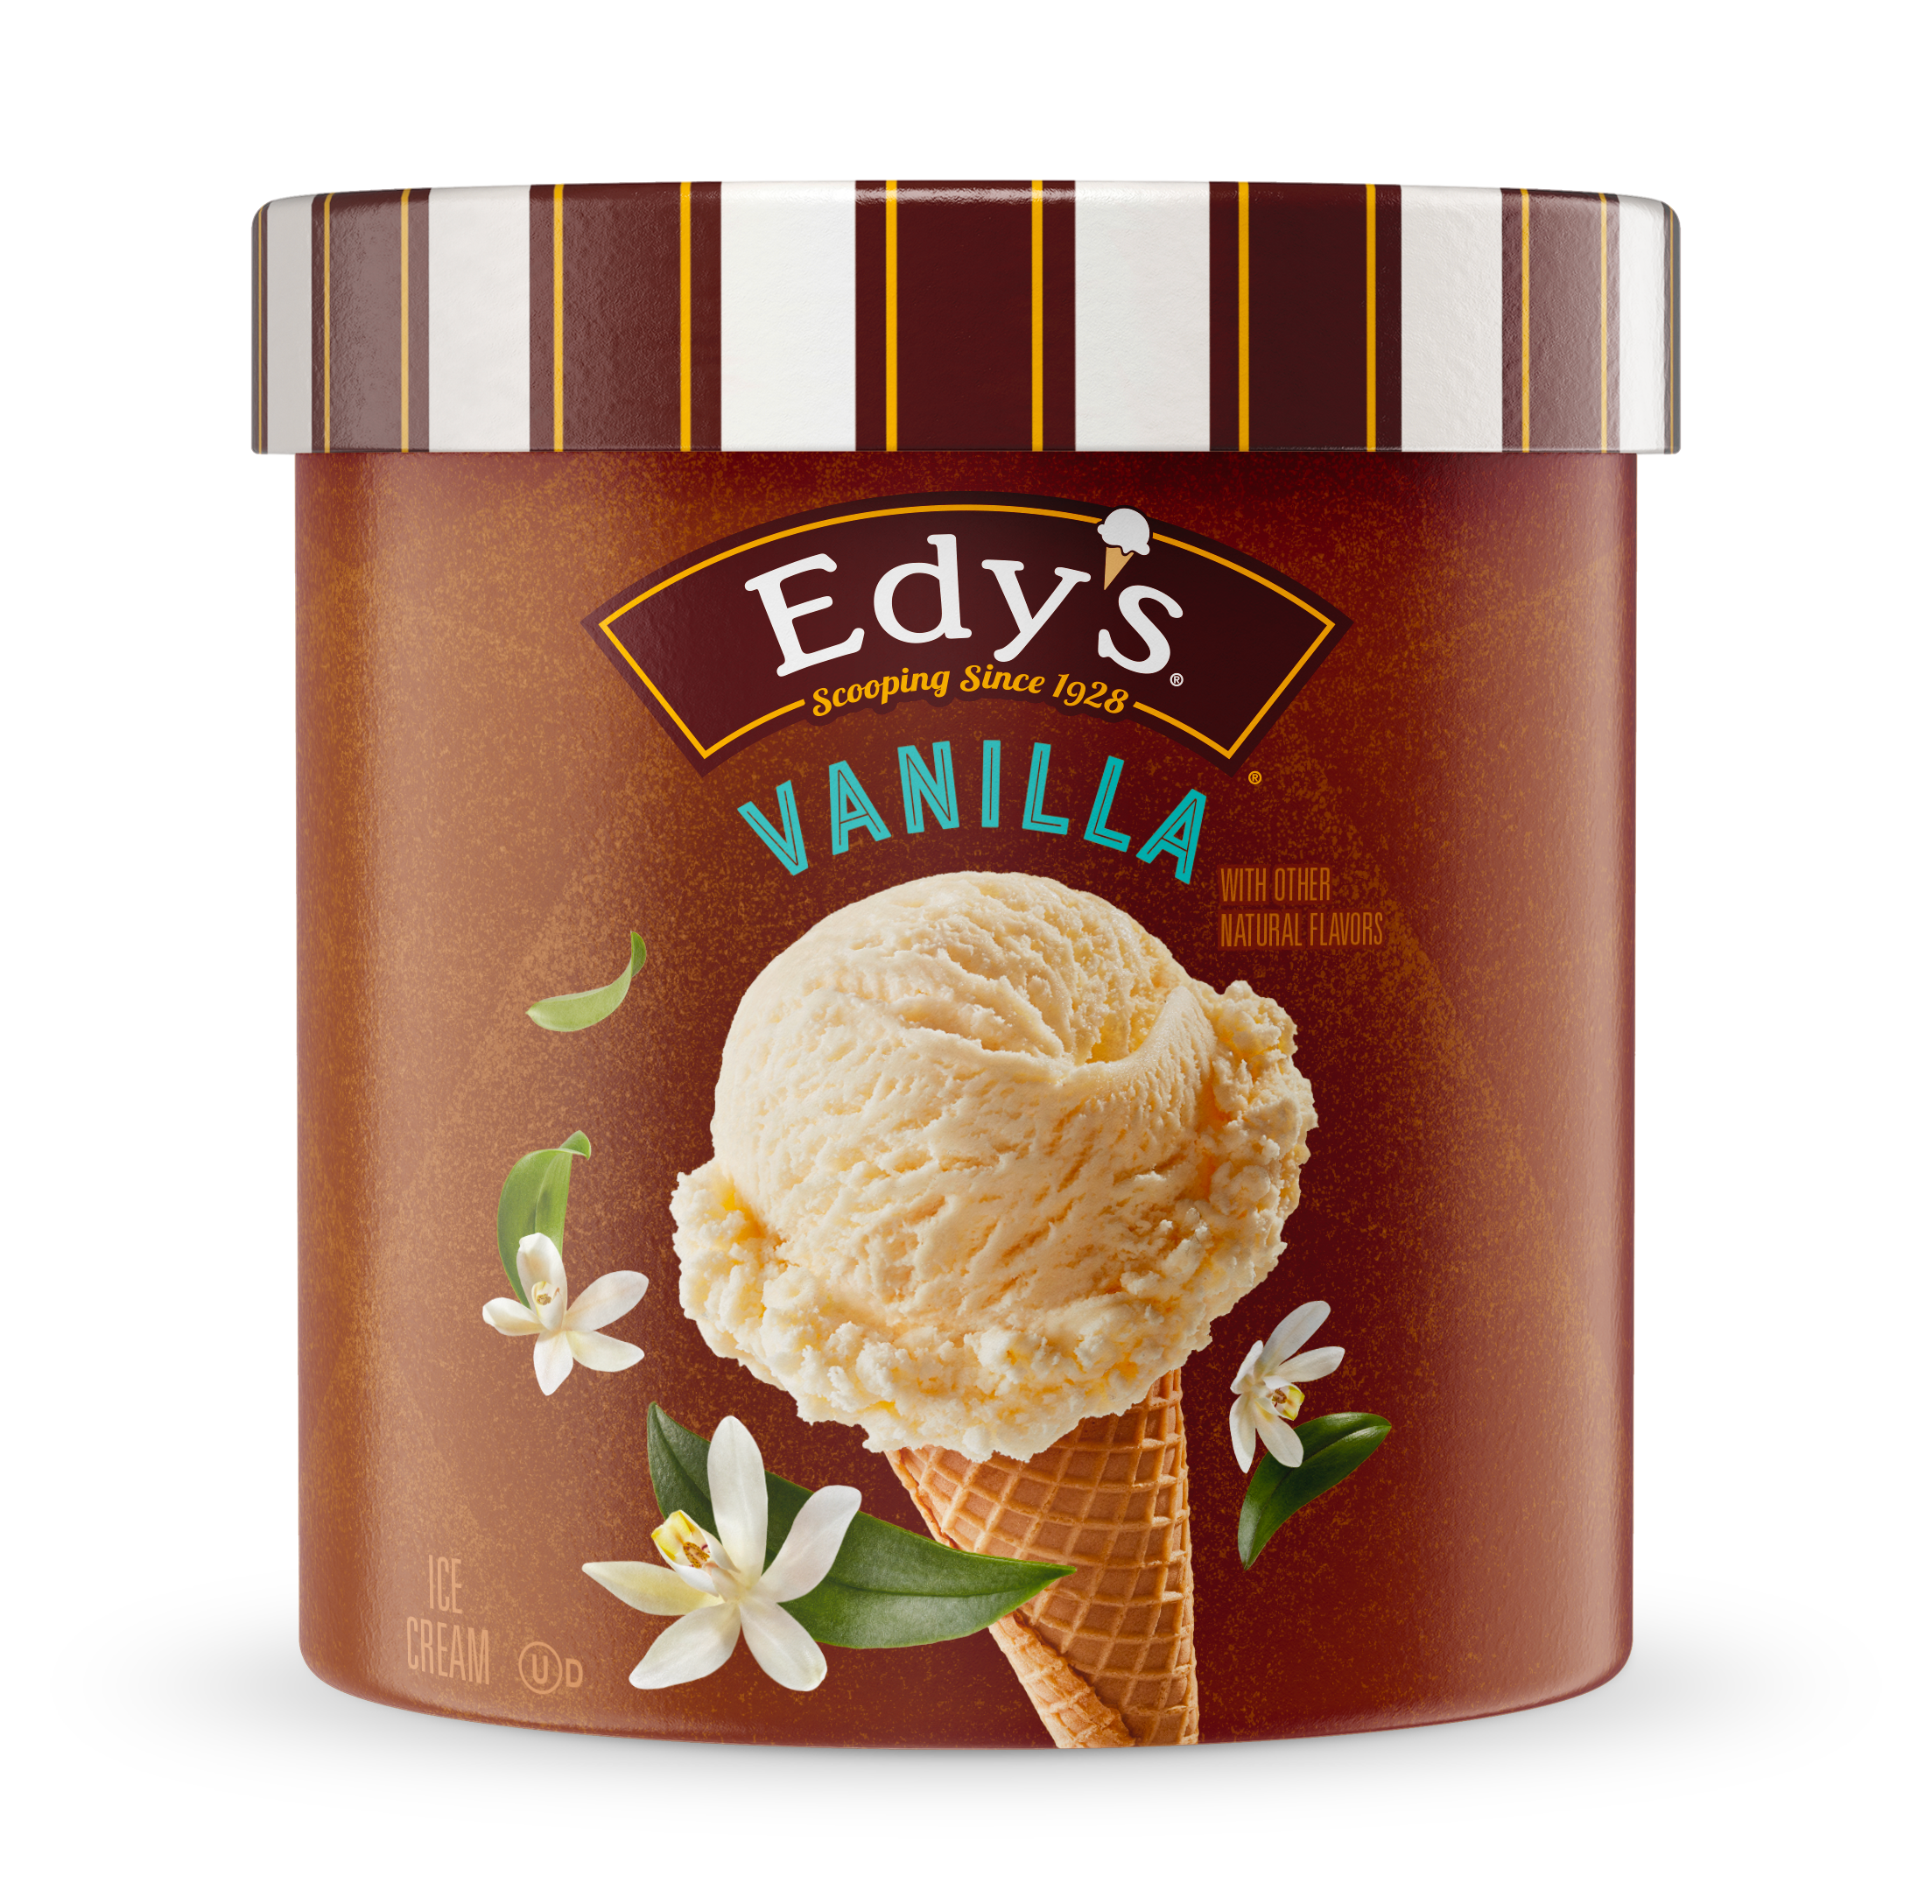 Carton of Edy's vanilla ice cream